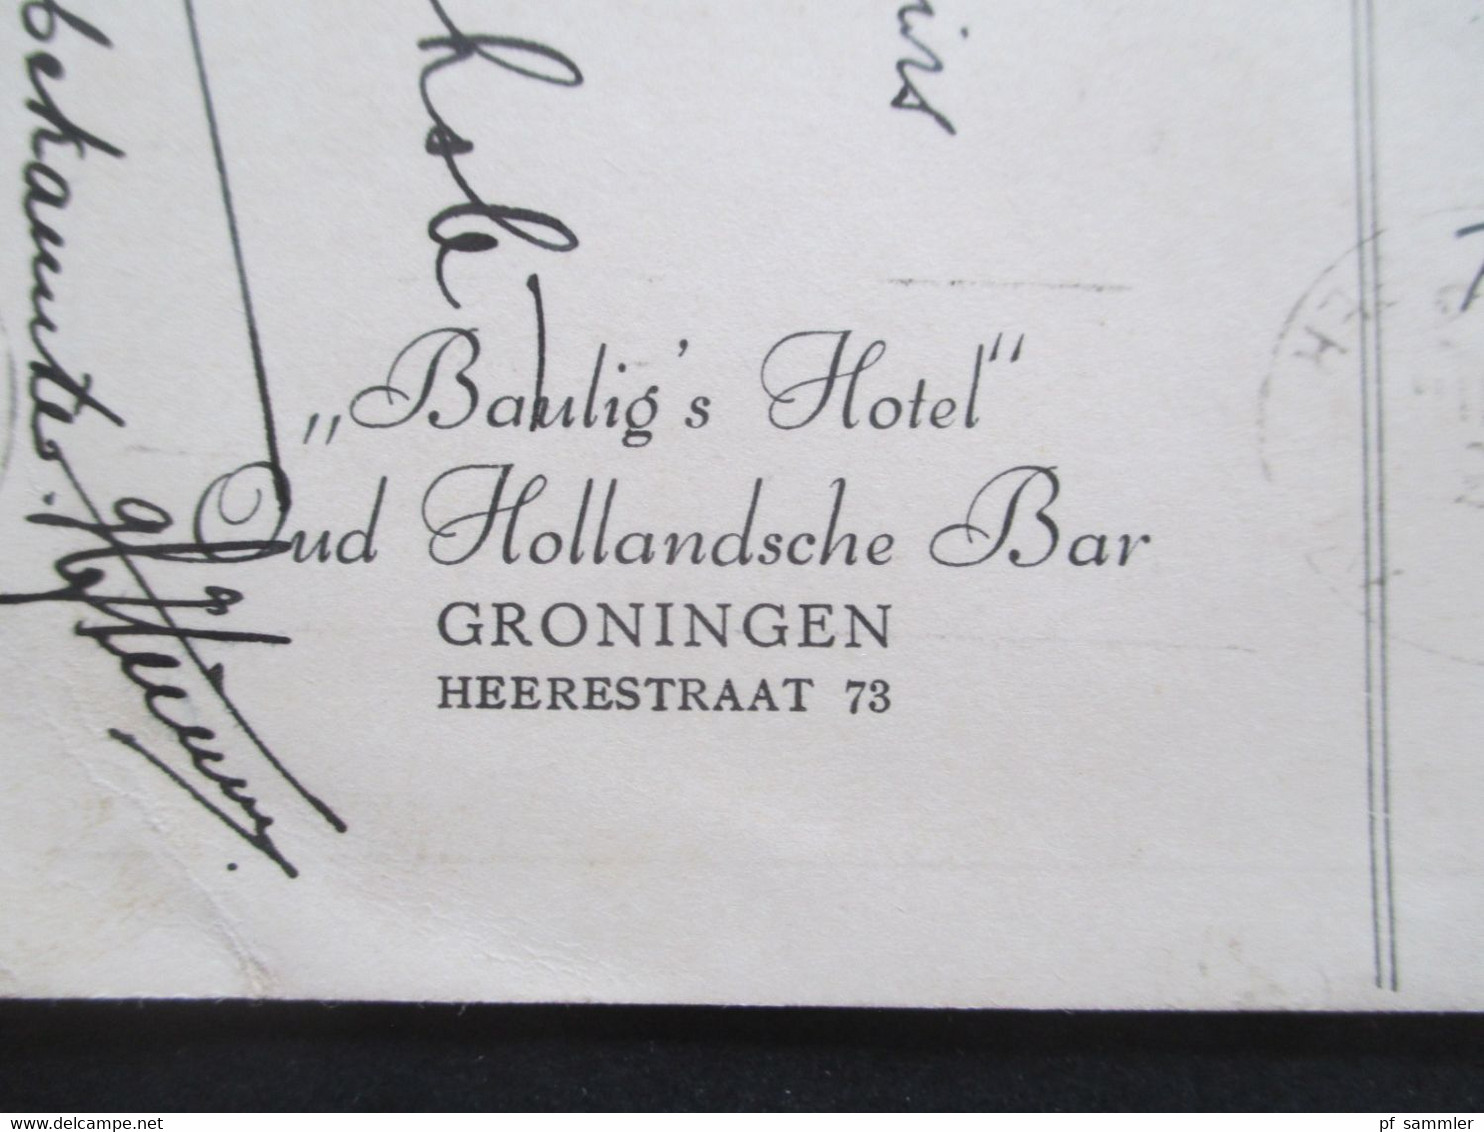 Niederlande 1939 AK Bist Du Traurig Geh Zu Baulig. Bist Du Froh Tuh Ebenso. Baulig's Hotel Oud Hollandsche Bar Groningen - Alberghi & Ristoranti